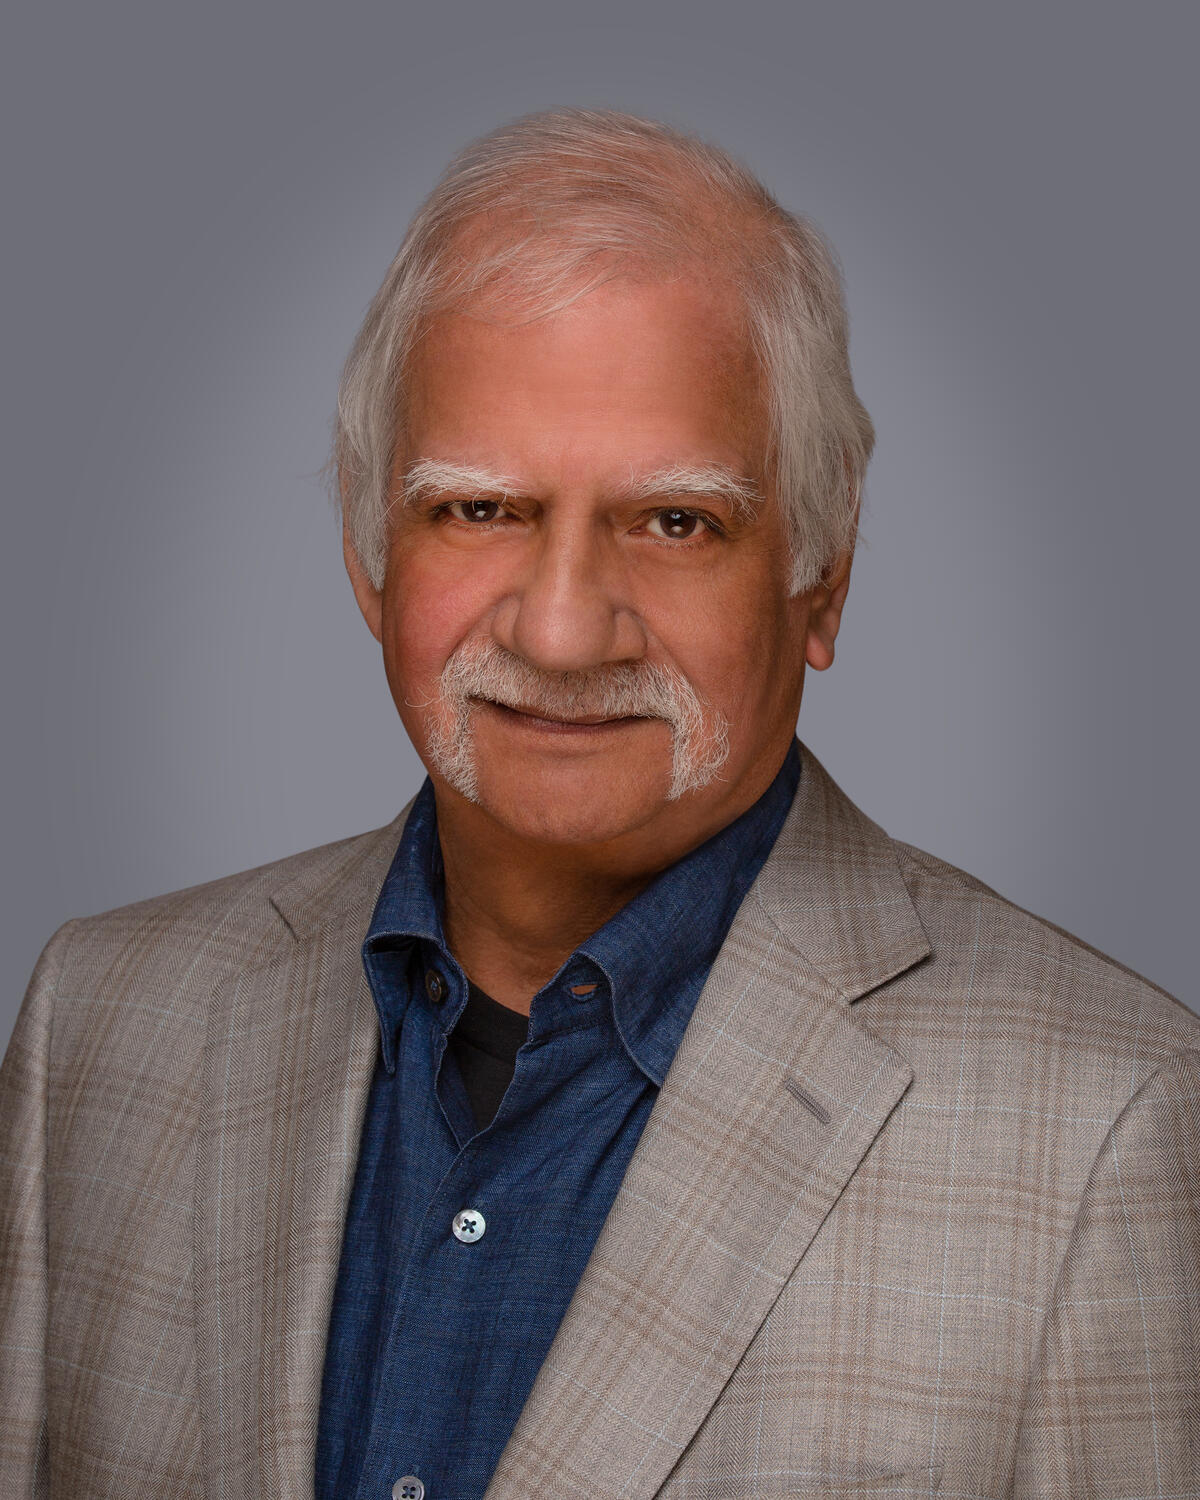 Jawahar Gidwani